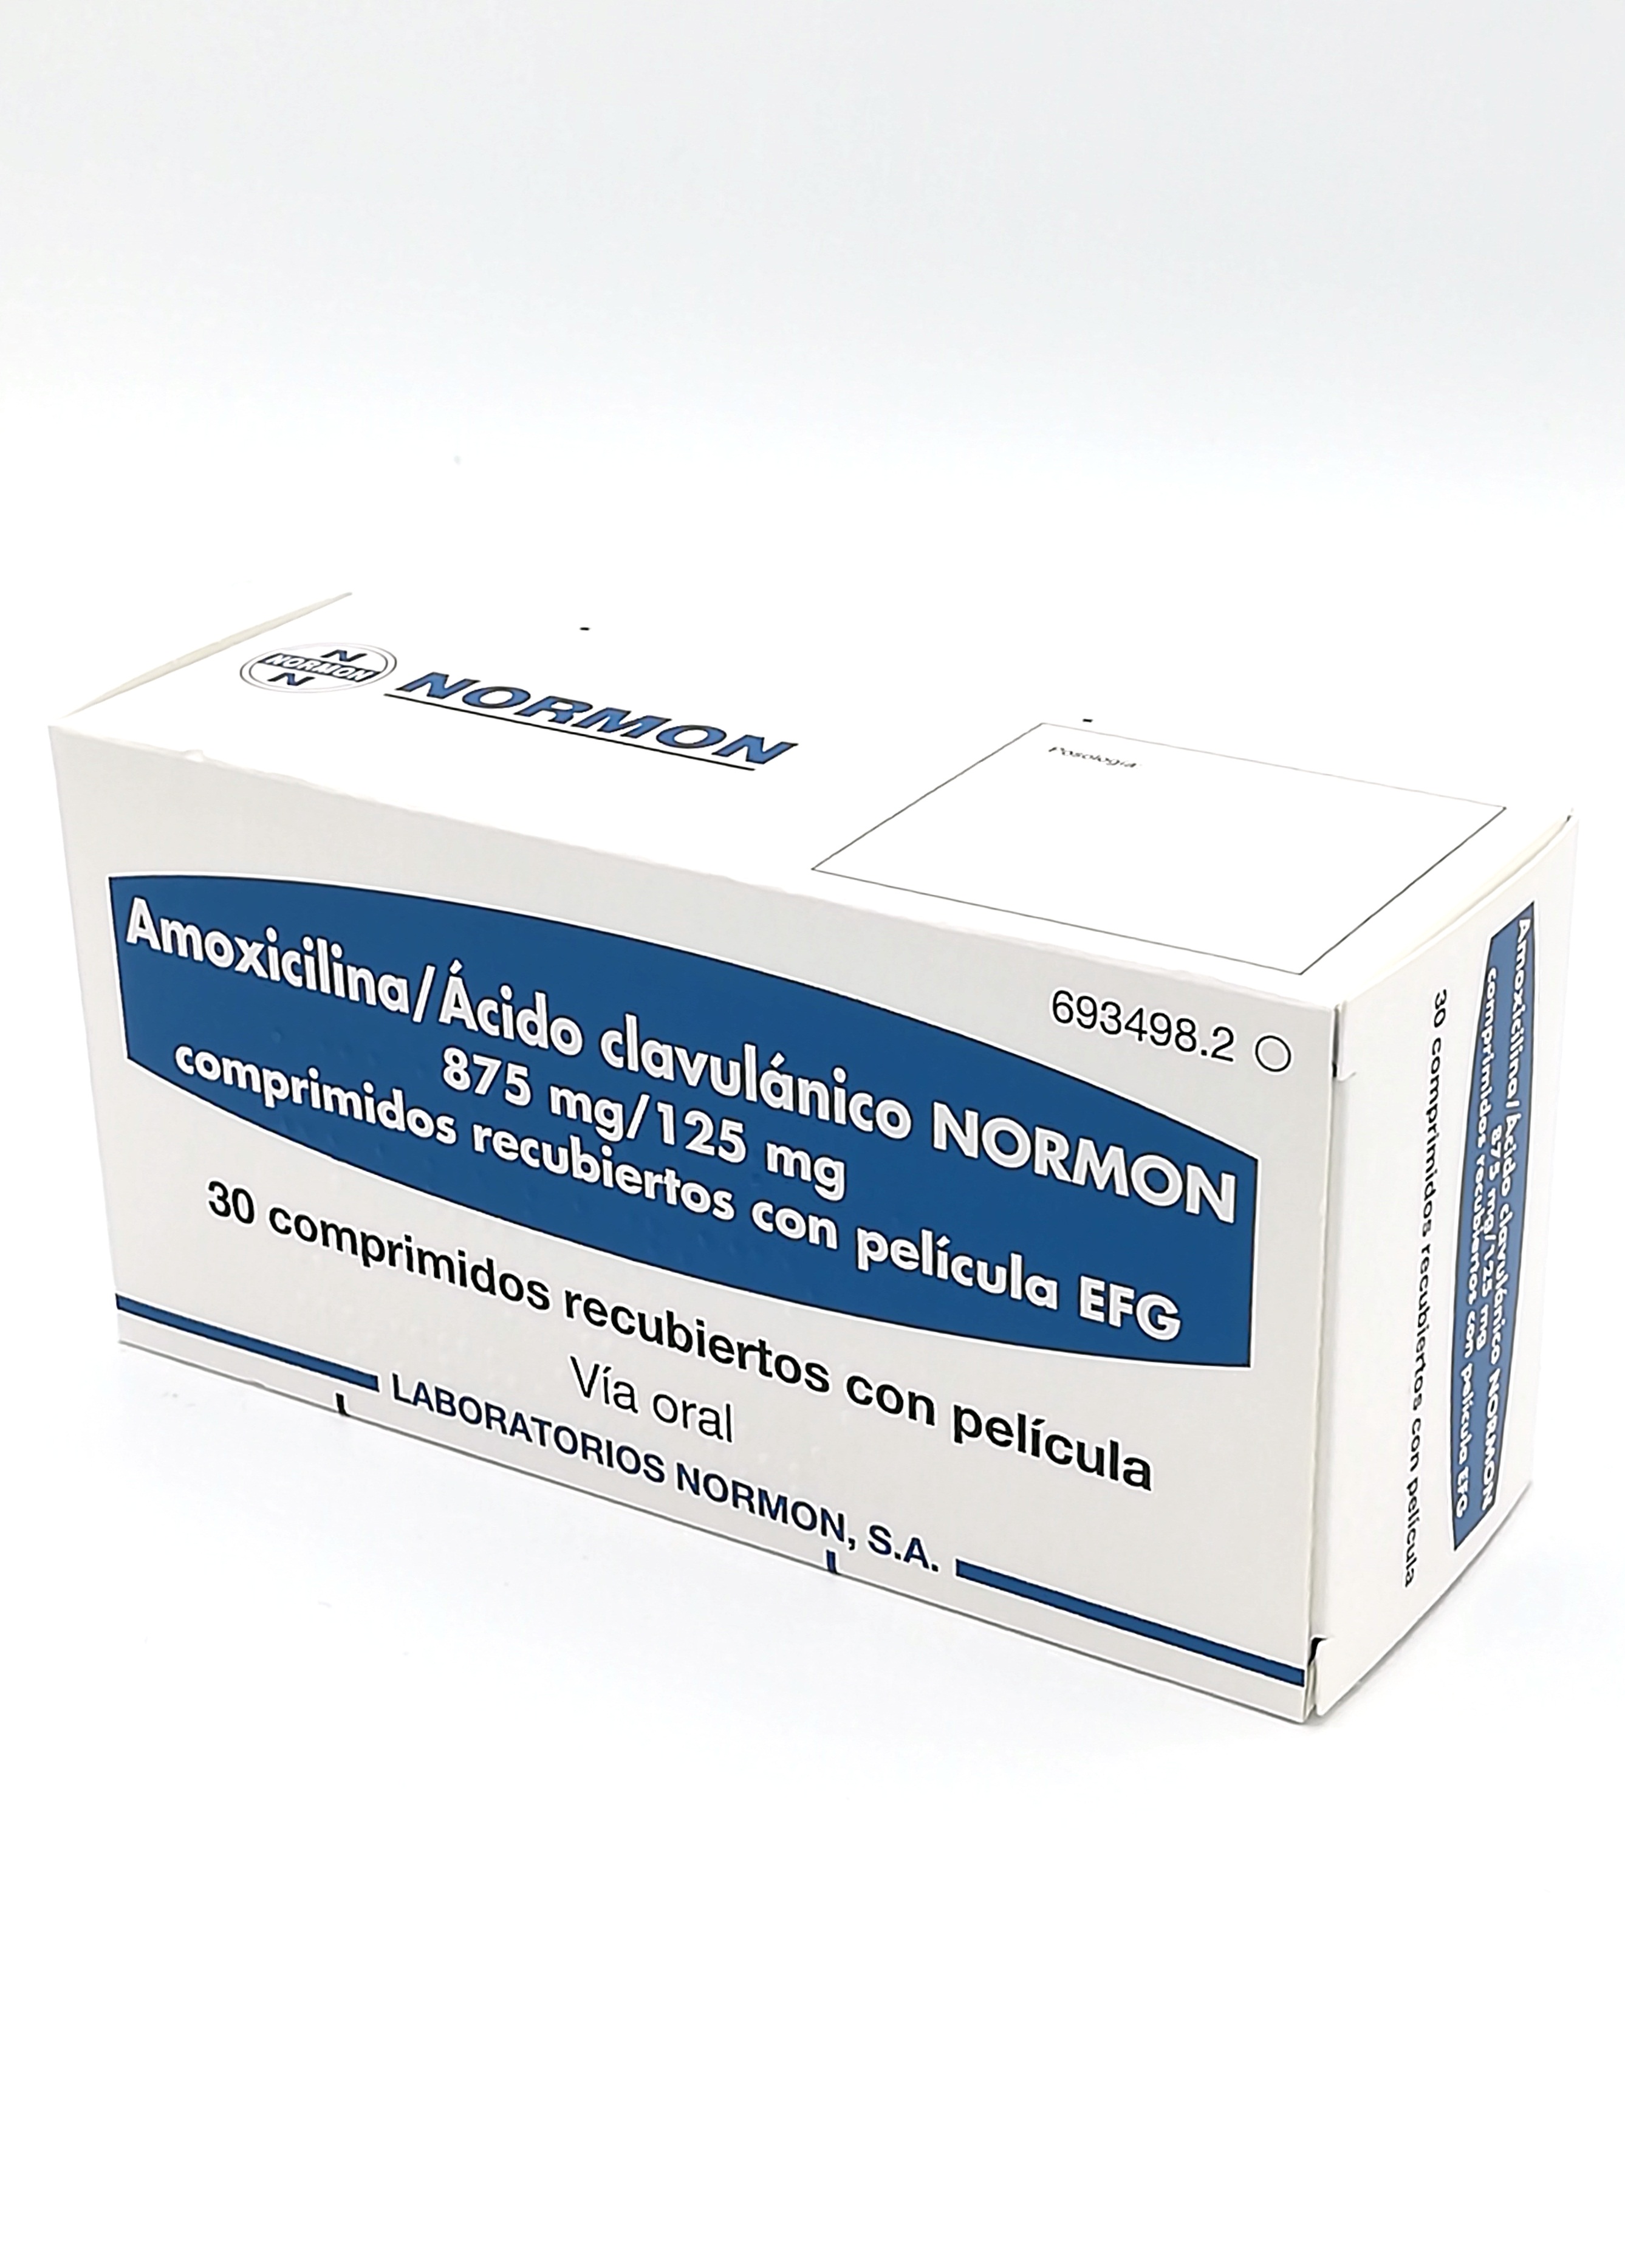 AMOXICILINA/ACIDO CLAVULANICO NORMON EFG 875 mg/125 mg 30 COMPRIMIDOS  RECUBIERTOS - Farmacéuticos